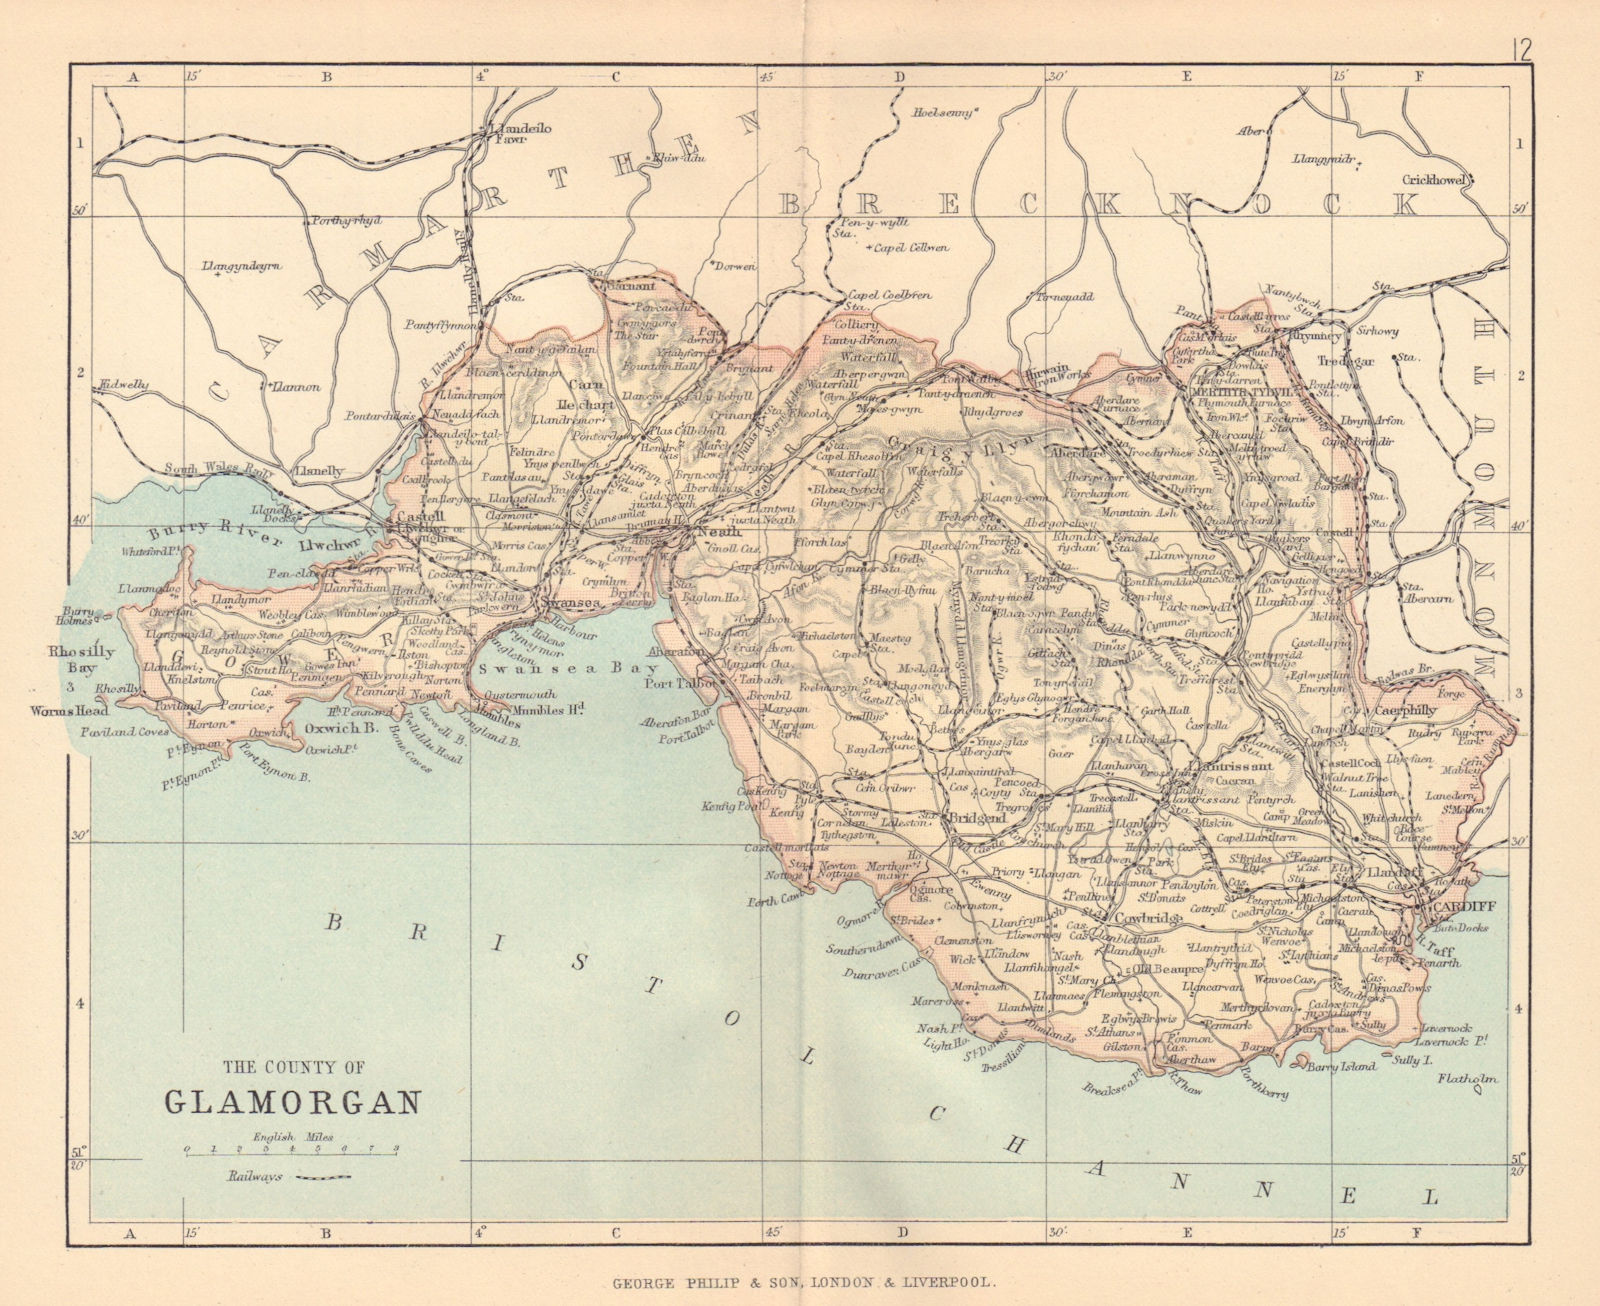 GLAMORGANSHIRE Cardiff Swansea Neath Port Talbot Wales BARTHOLOMEW 1885 map